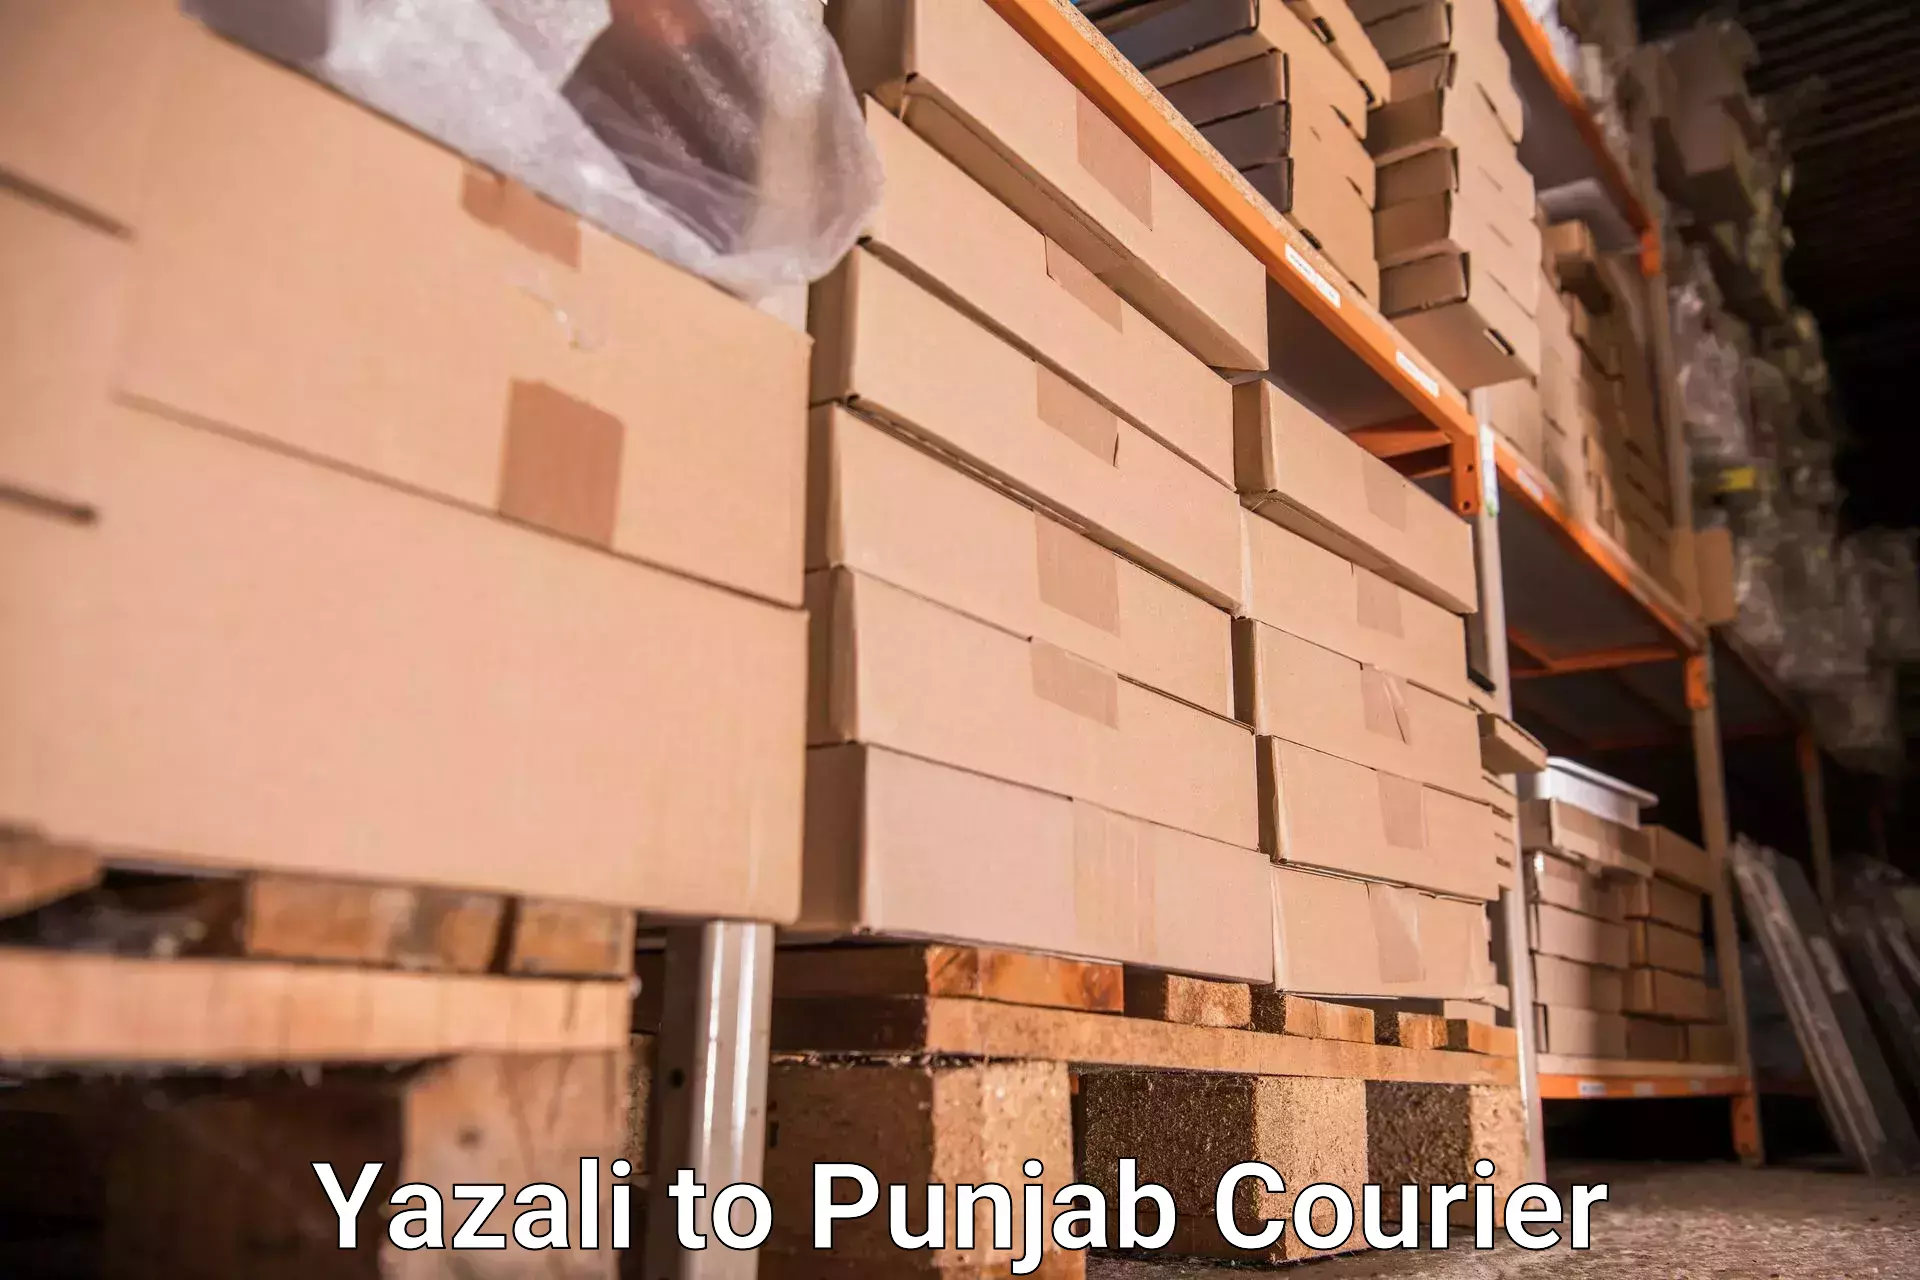 Luggage transport company Yazali to Jalalabad